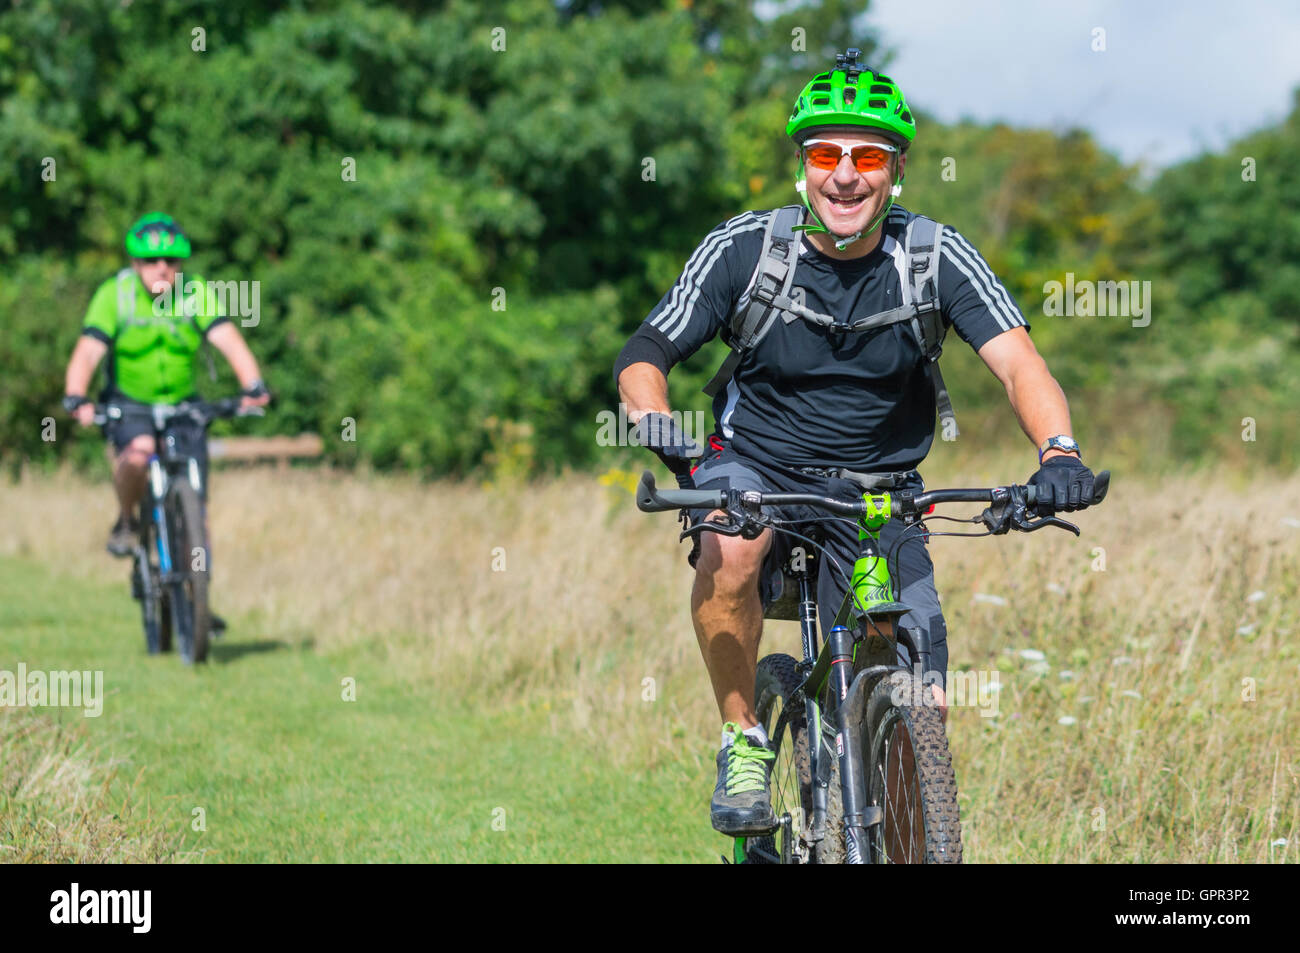 Les cyclistes portant des casques dans la campagne, profitant de la balade sur les South Downs dans le West Sussex, Angleterre, Royaume-Uni. Mode de vie sain. Banque D'Images